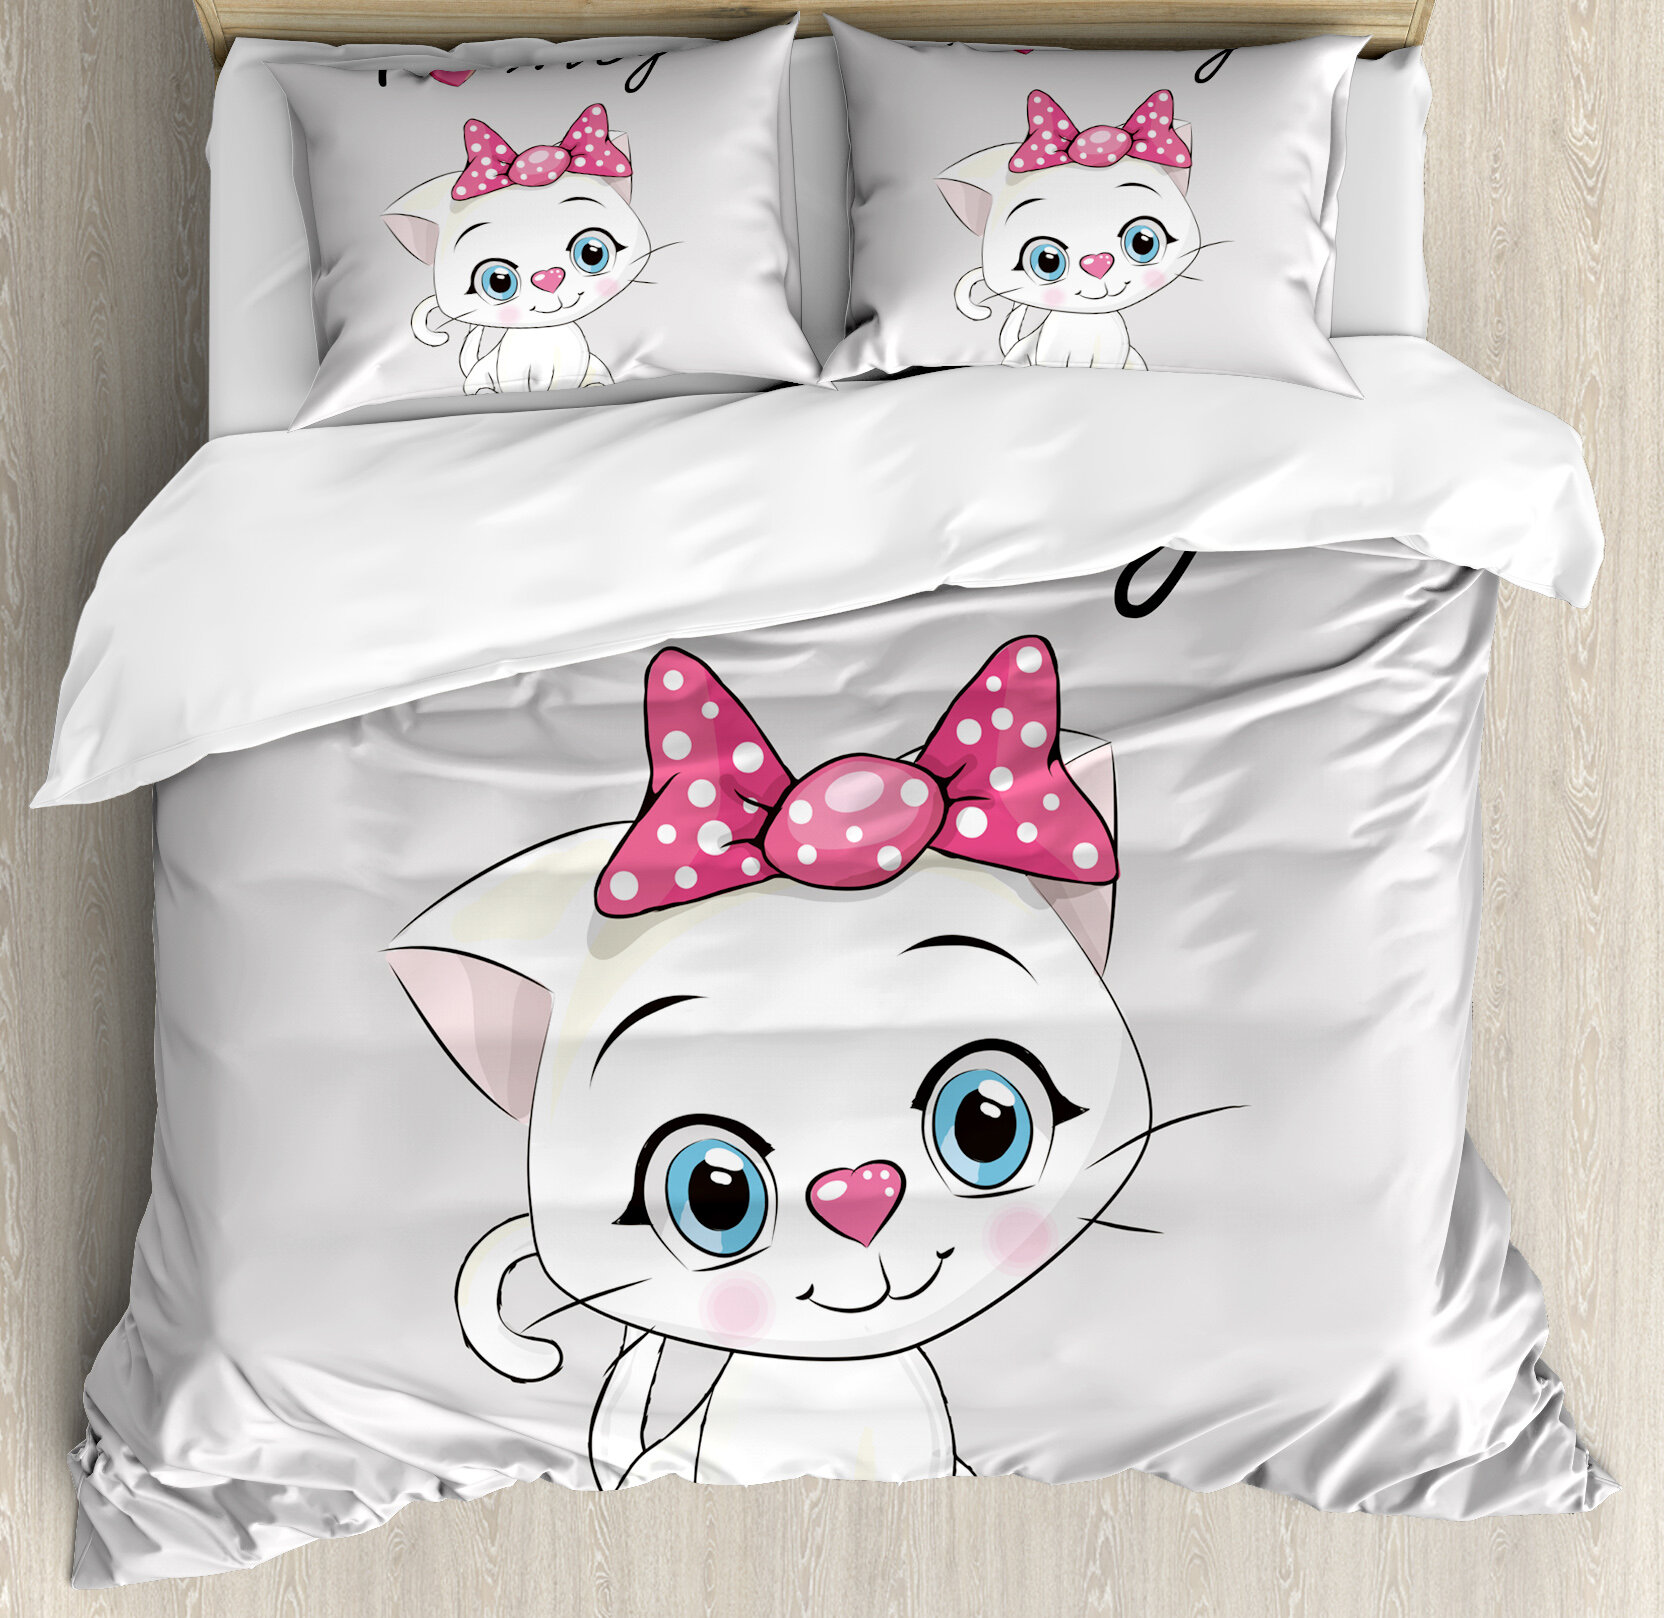 Cartoon Blue Cute cat Bedding Comfortable Breathable Hidden Zipper Kids Duvet Cover Set-Queen 3Pcs 1 Duvet Cover+2 Pillowcase